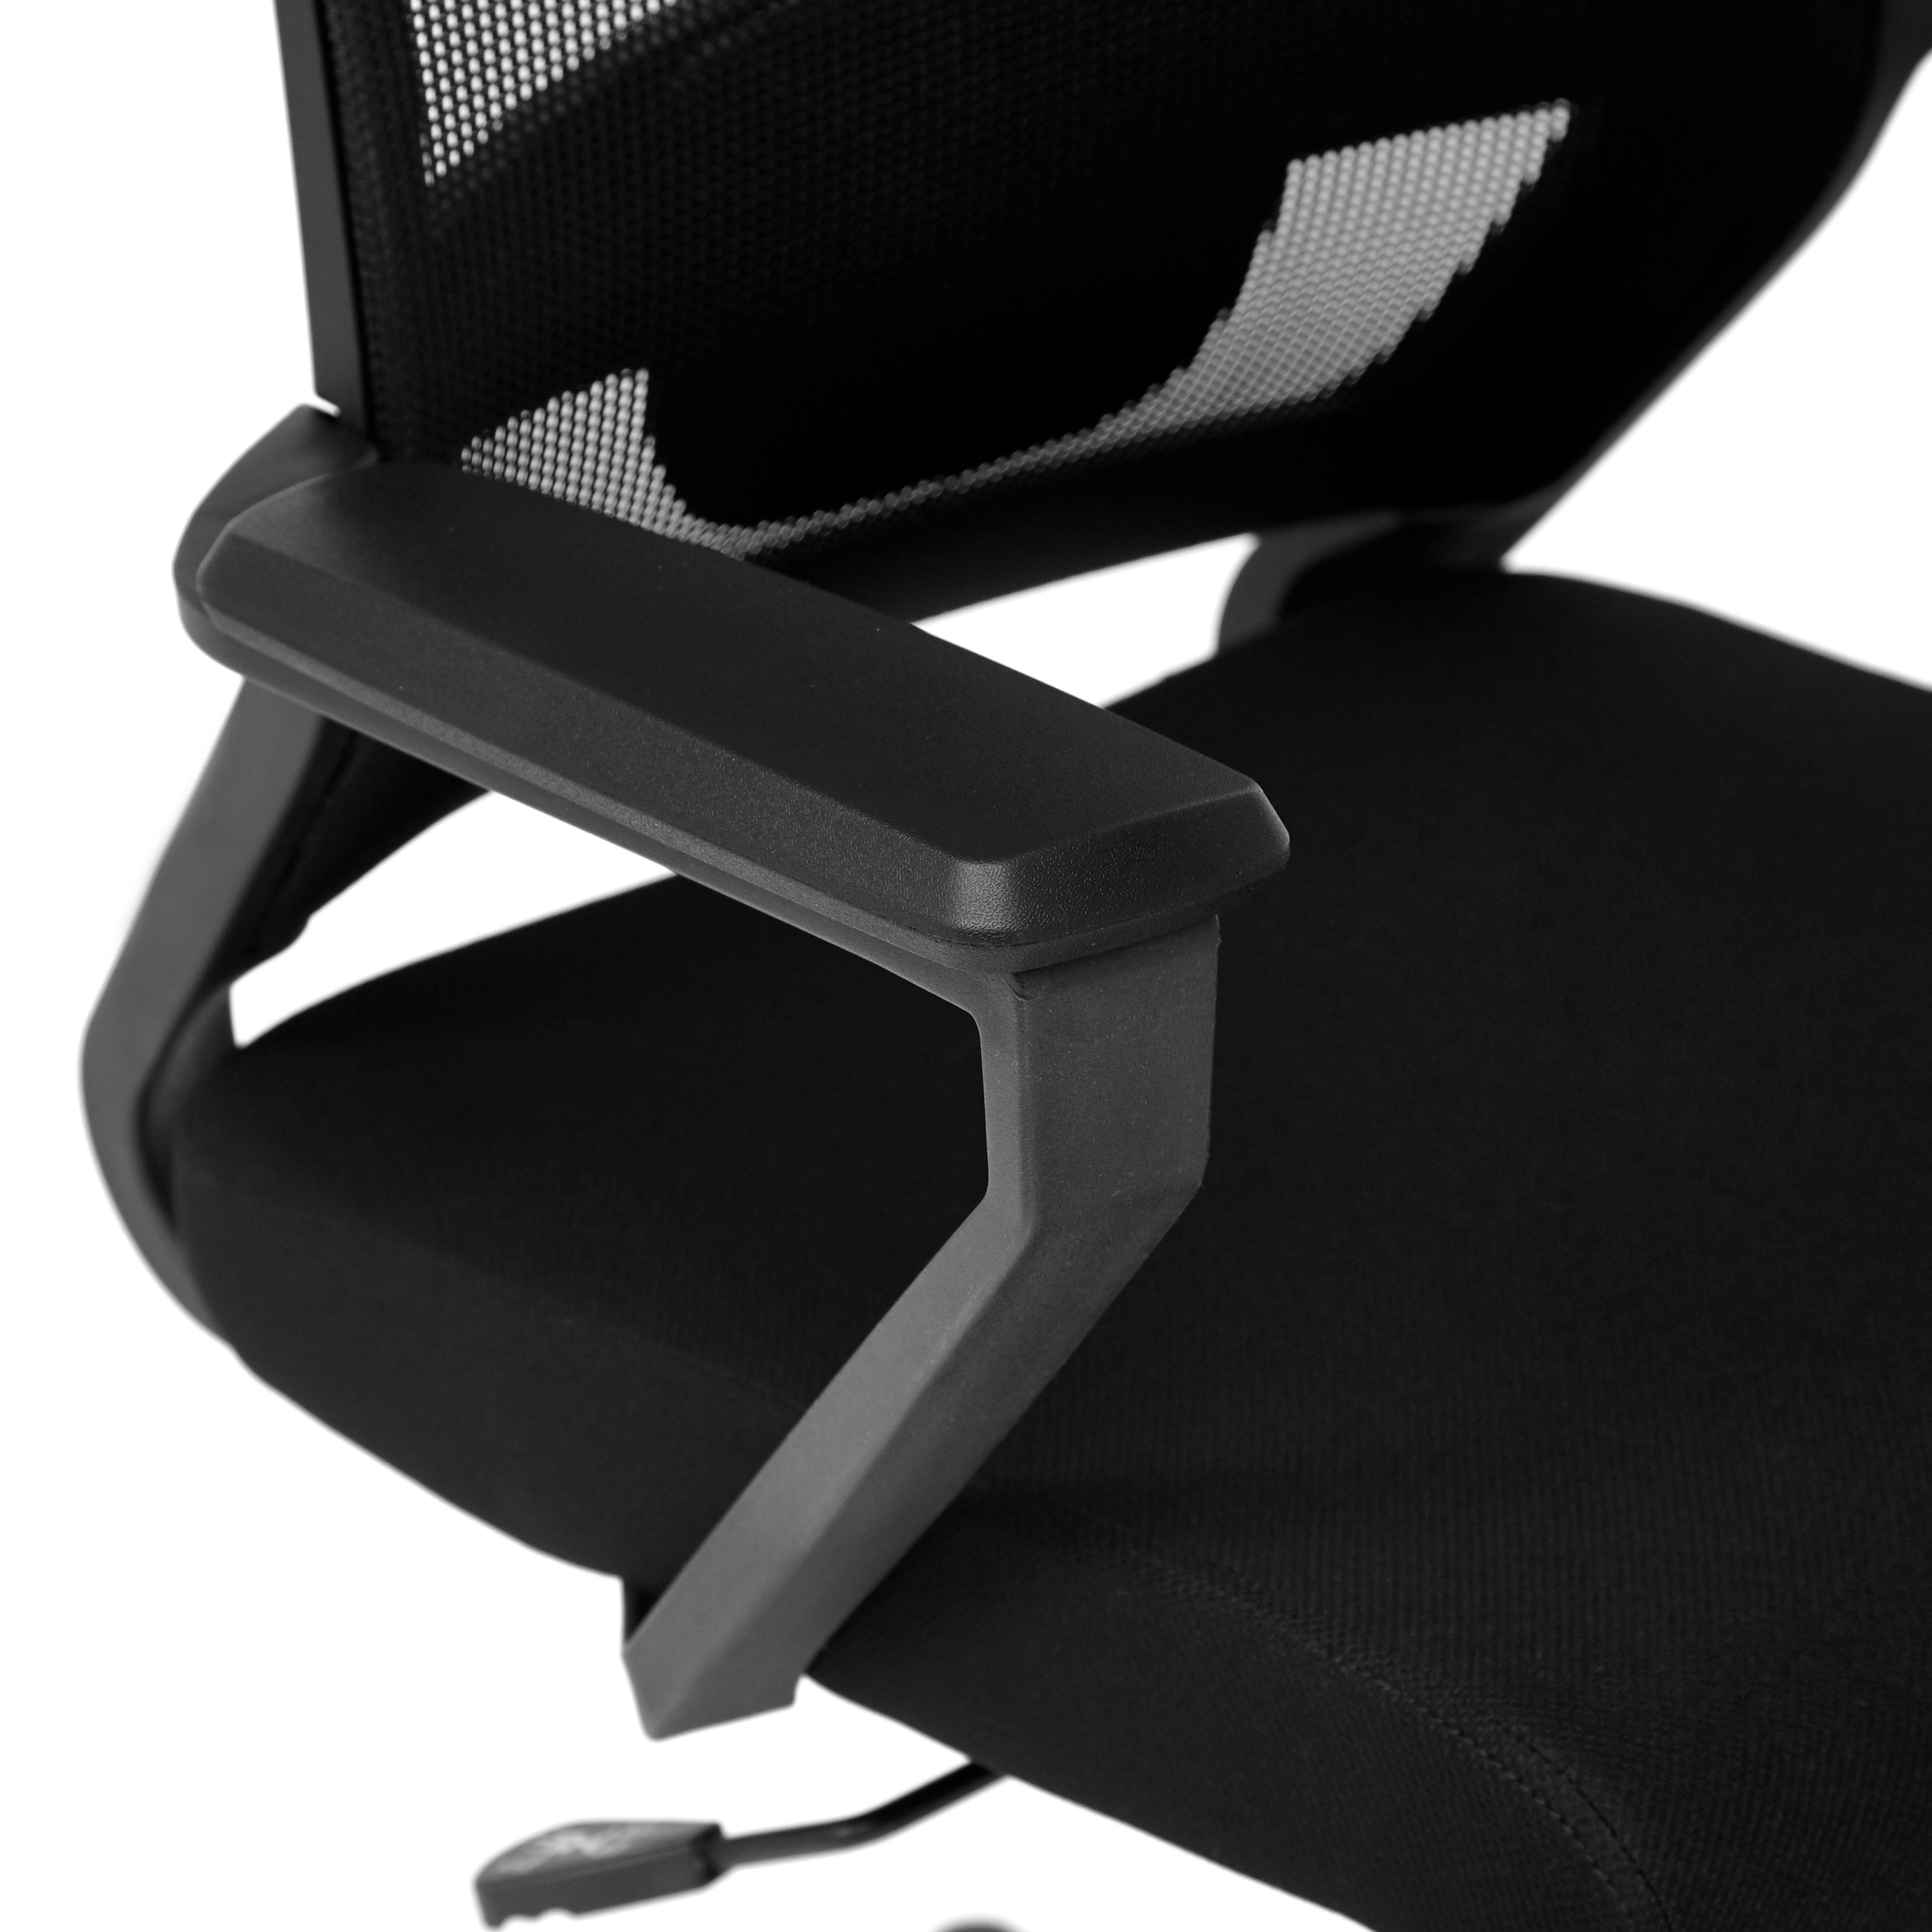 Кресло MESH-7 ткань, черный